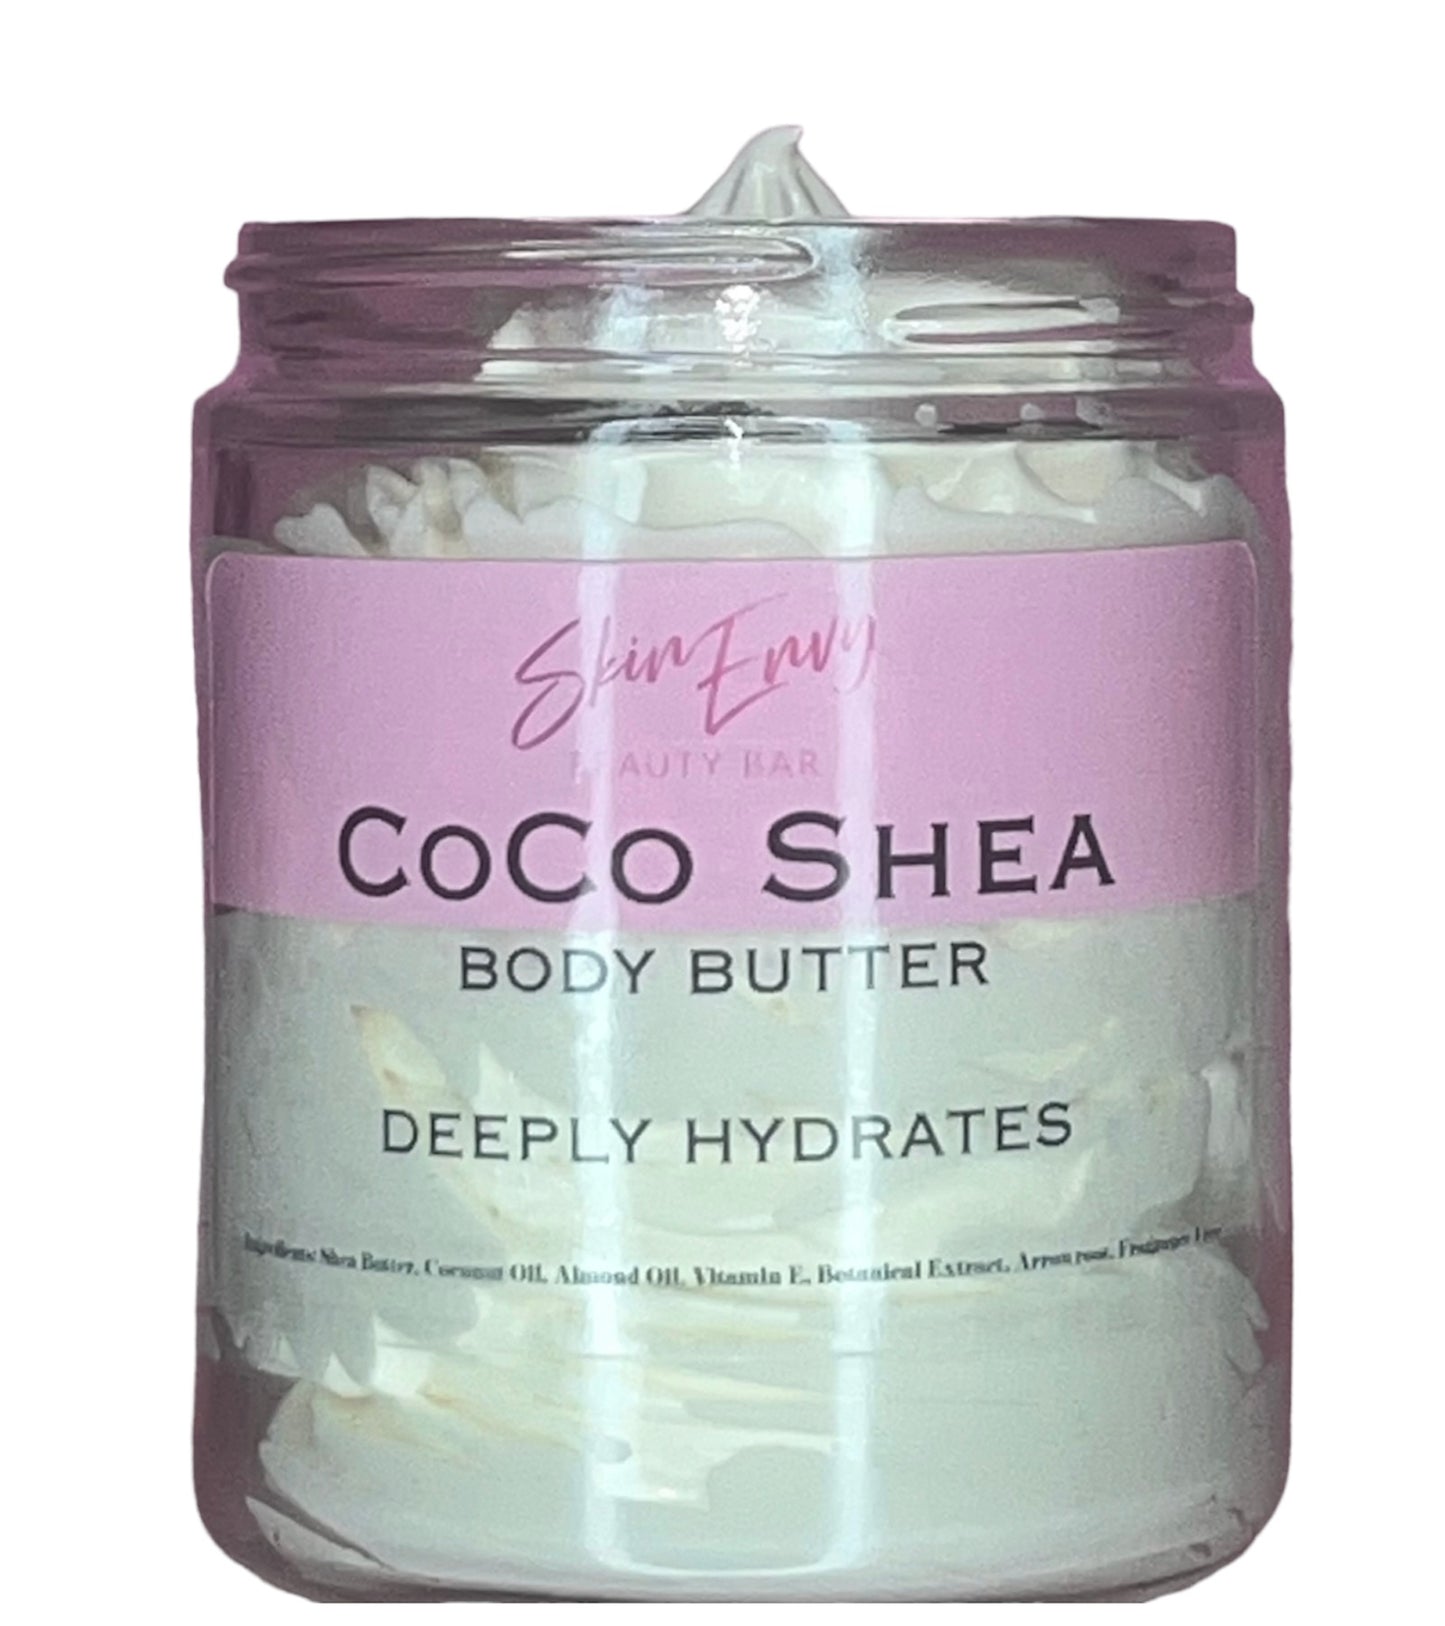 Coco Shea Body Butter